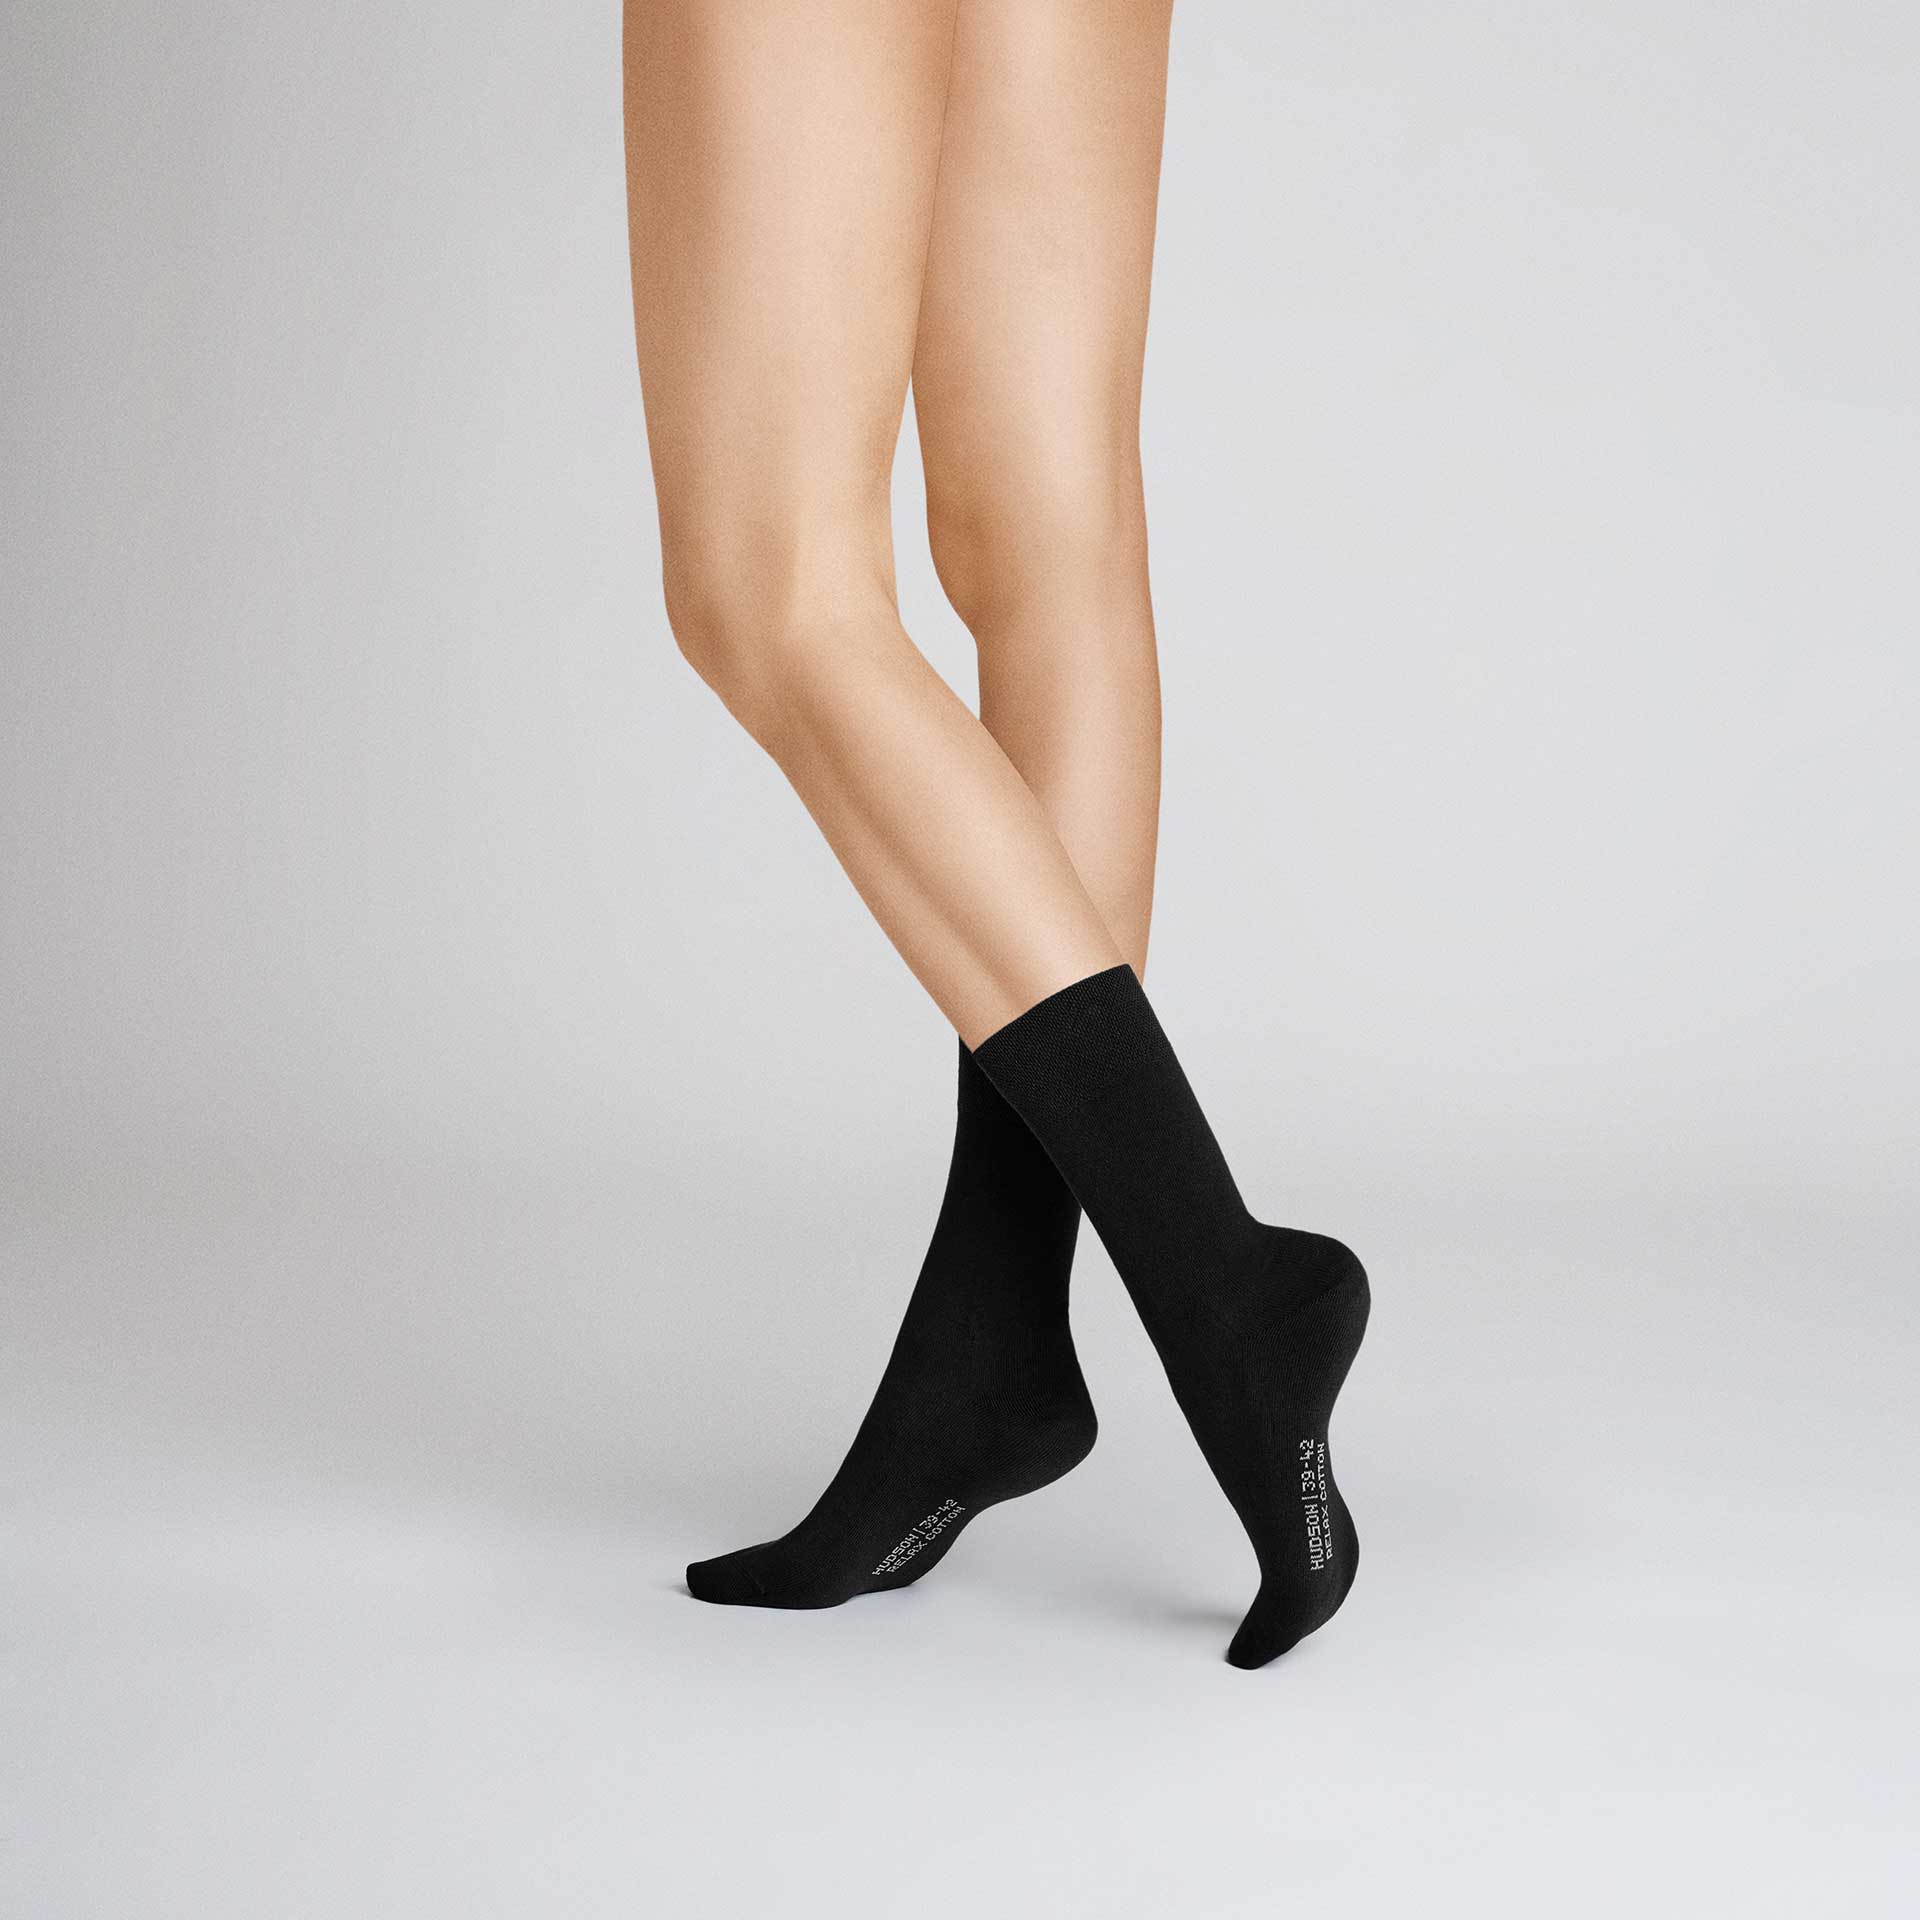 HUDSON Damen RELAX COTTON     -  35/38 - Socken aus 97% Baumwolle - Black (Schwarz)